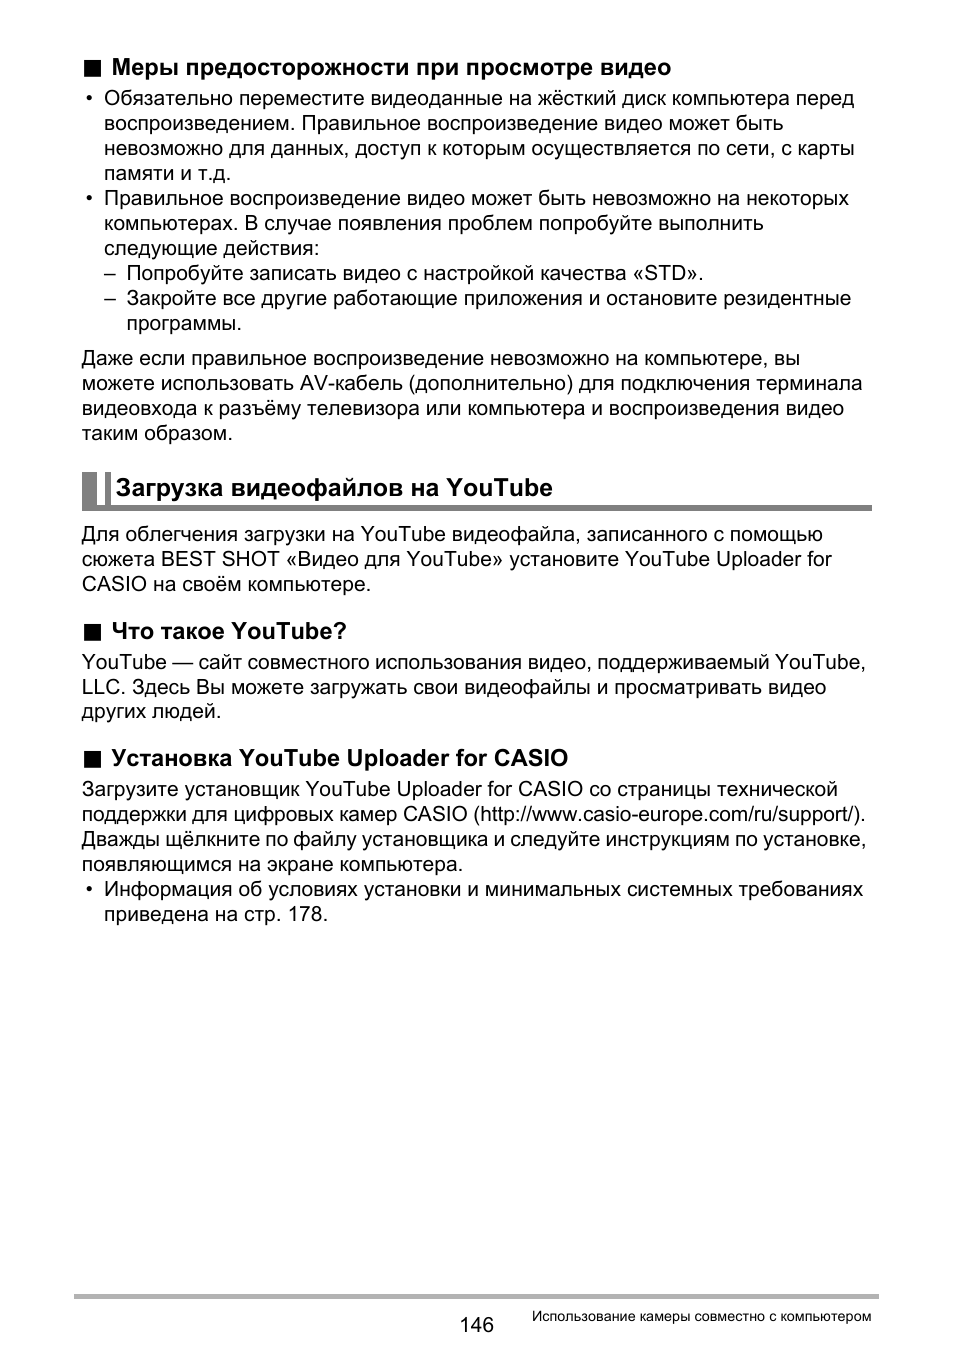 Загрузка видеофайлов на youtube | Инструкция по эксплуатации Casio EX-ZR20 | Страница 146 / 197